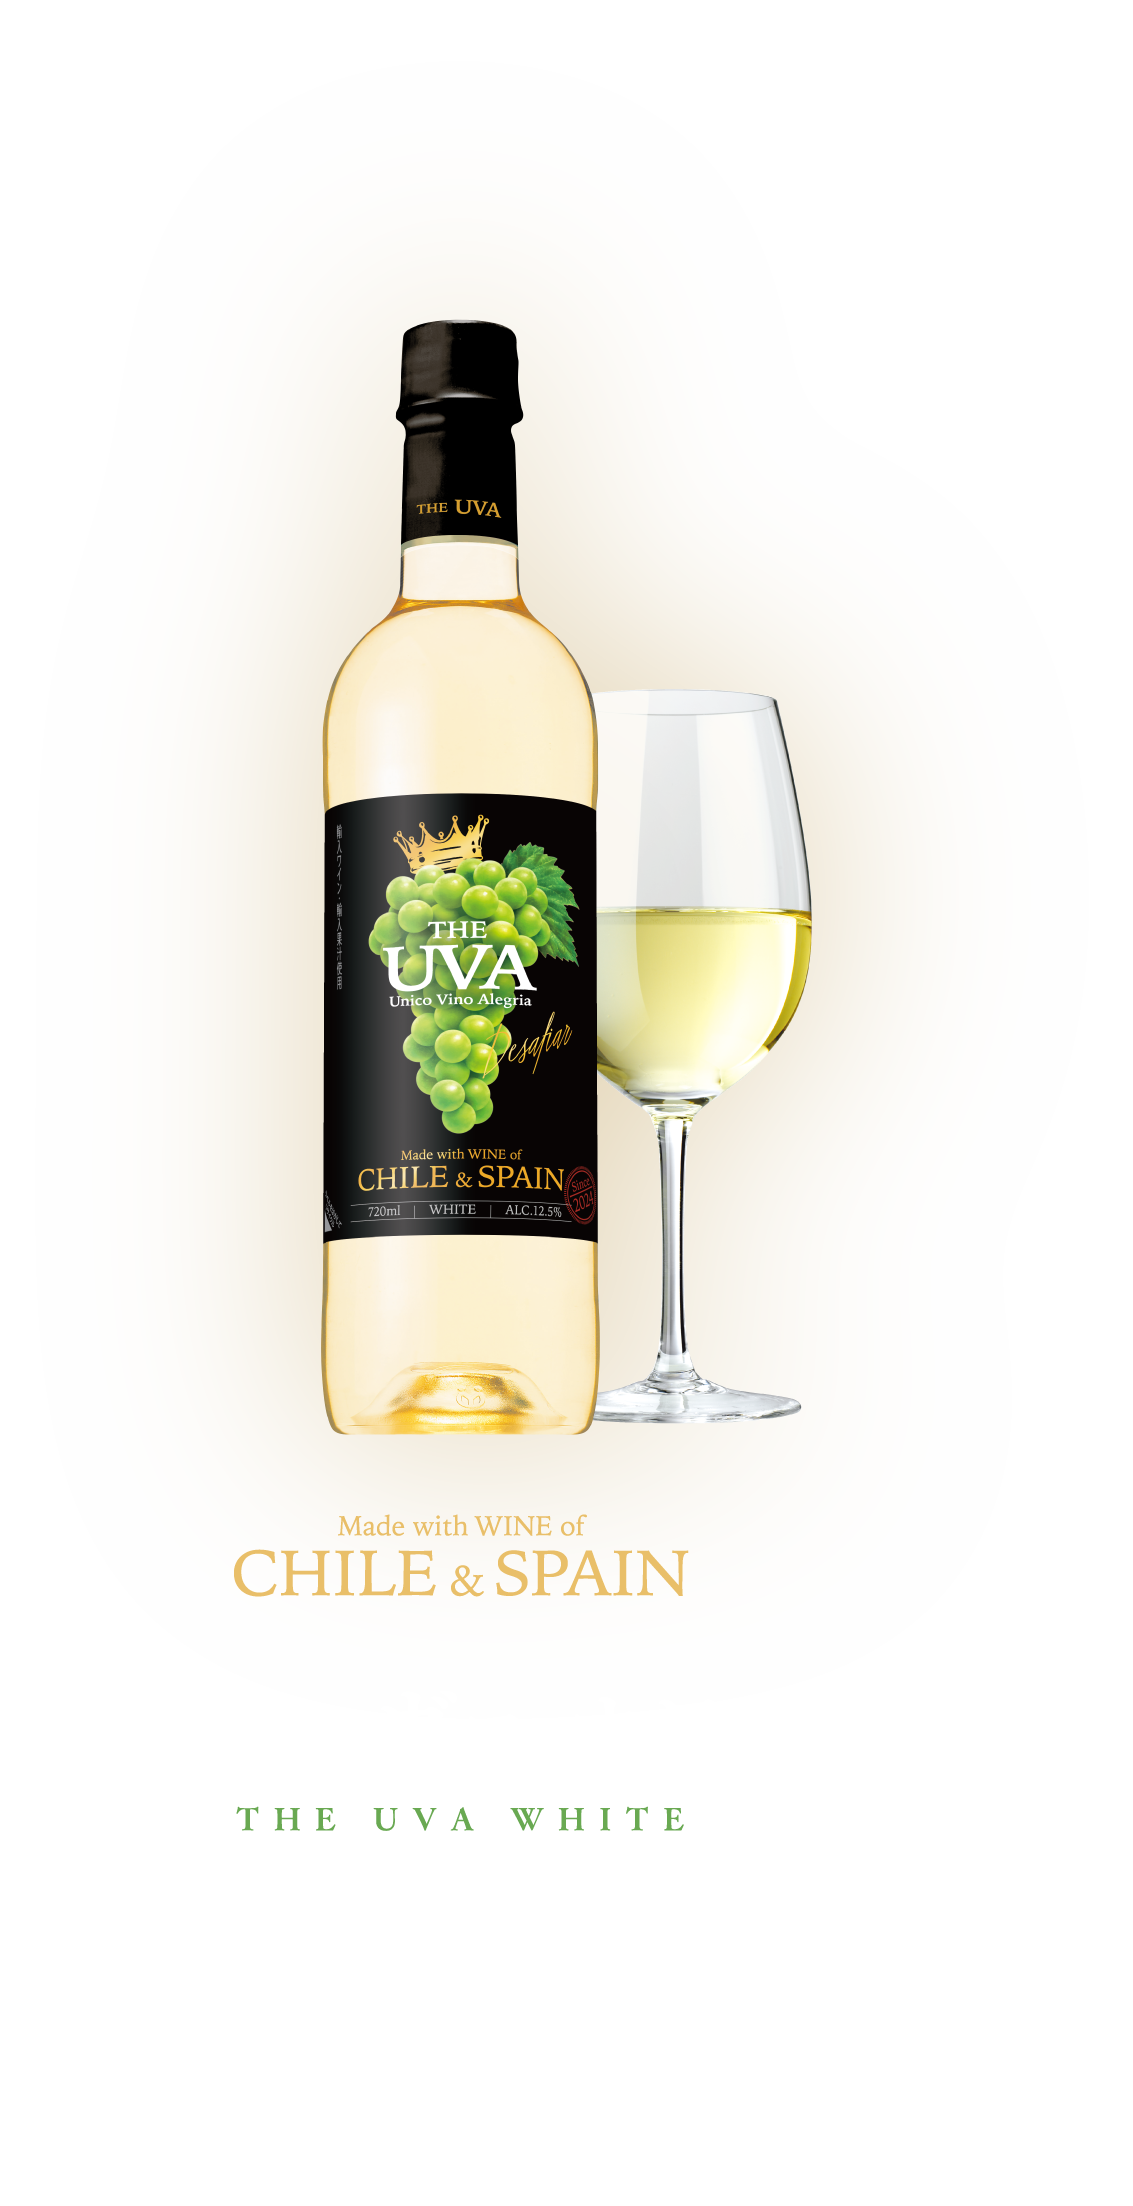 ザ・ウーヴァ ホワイト 熟した果実味と、マイルドな酸味。程よいボディとまろやかな口当たりが特長の辛口白ワインです。